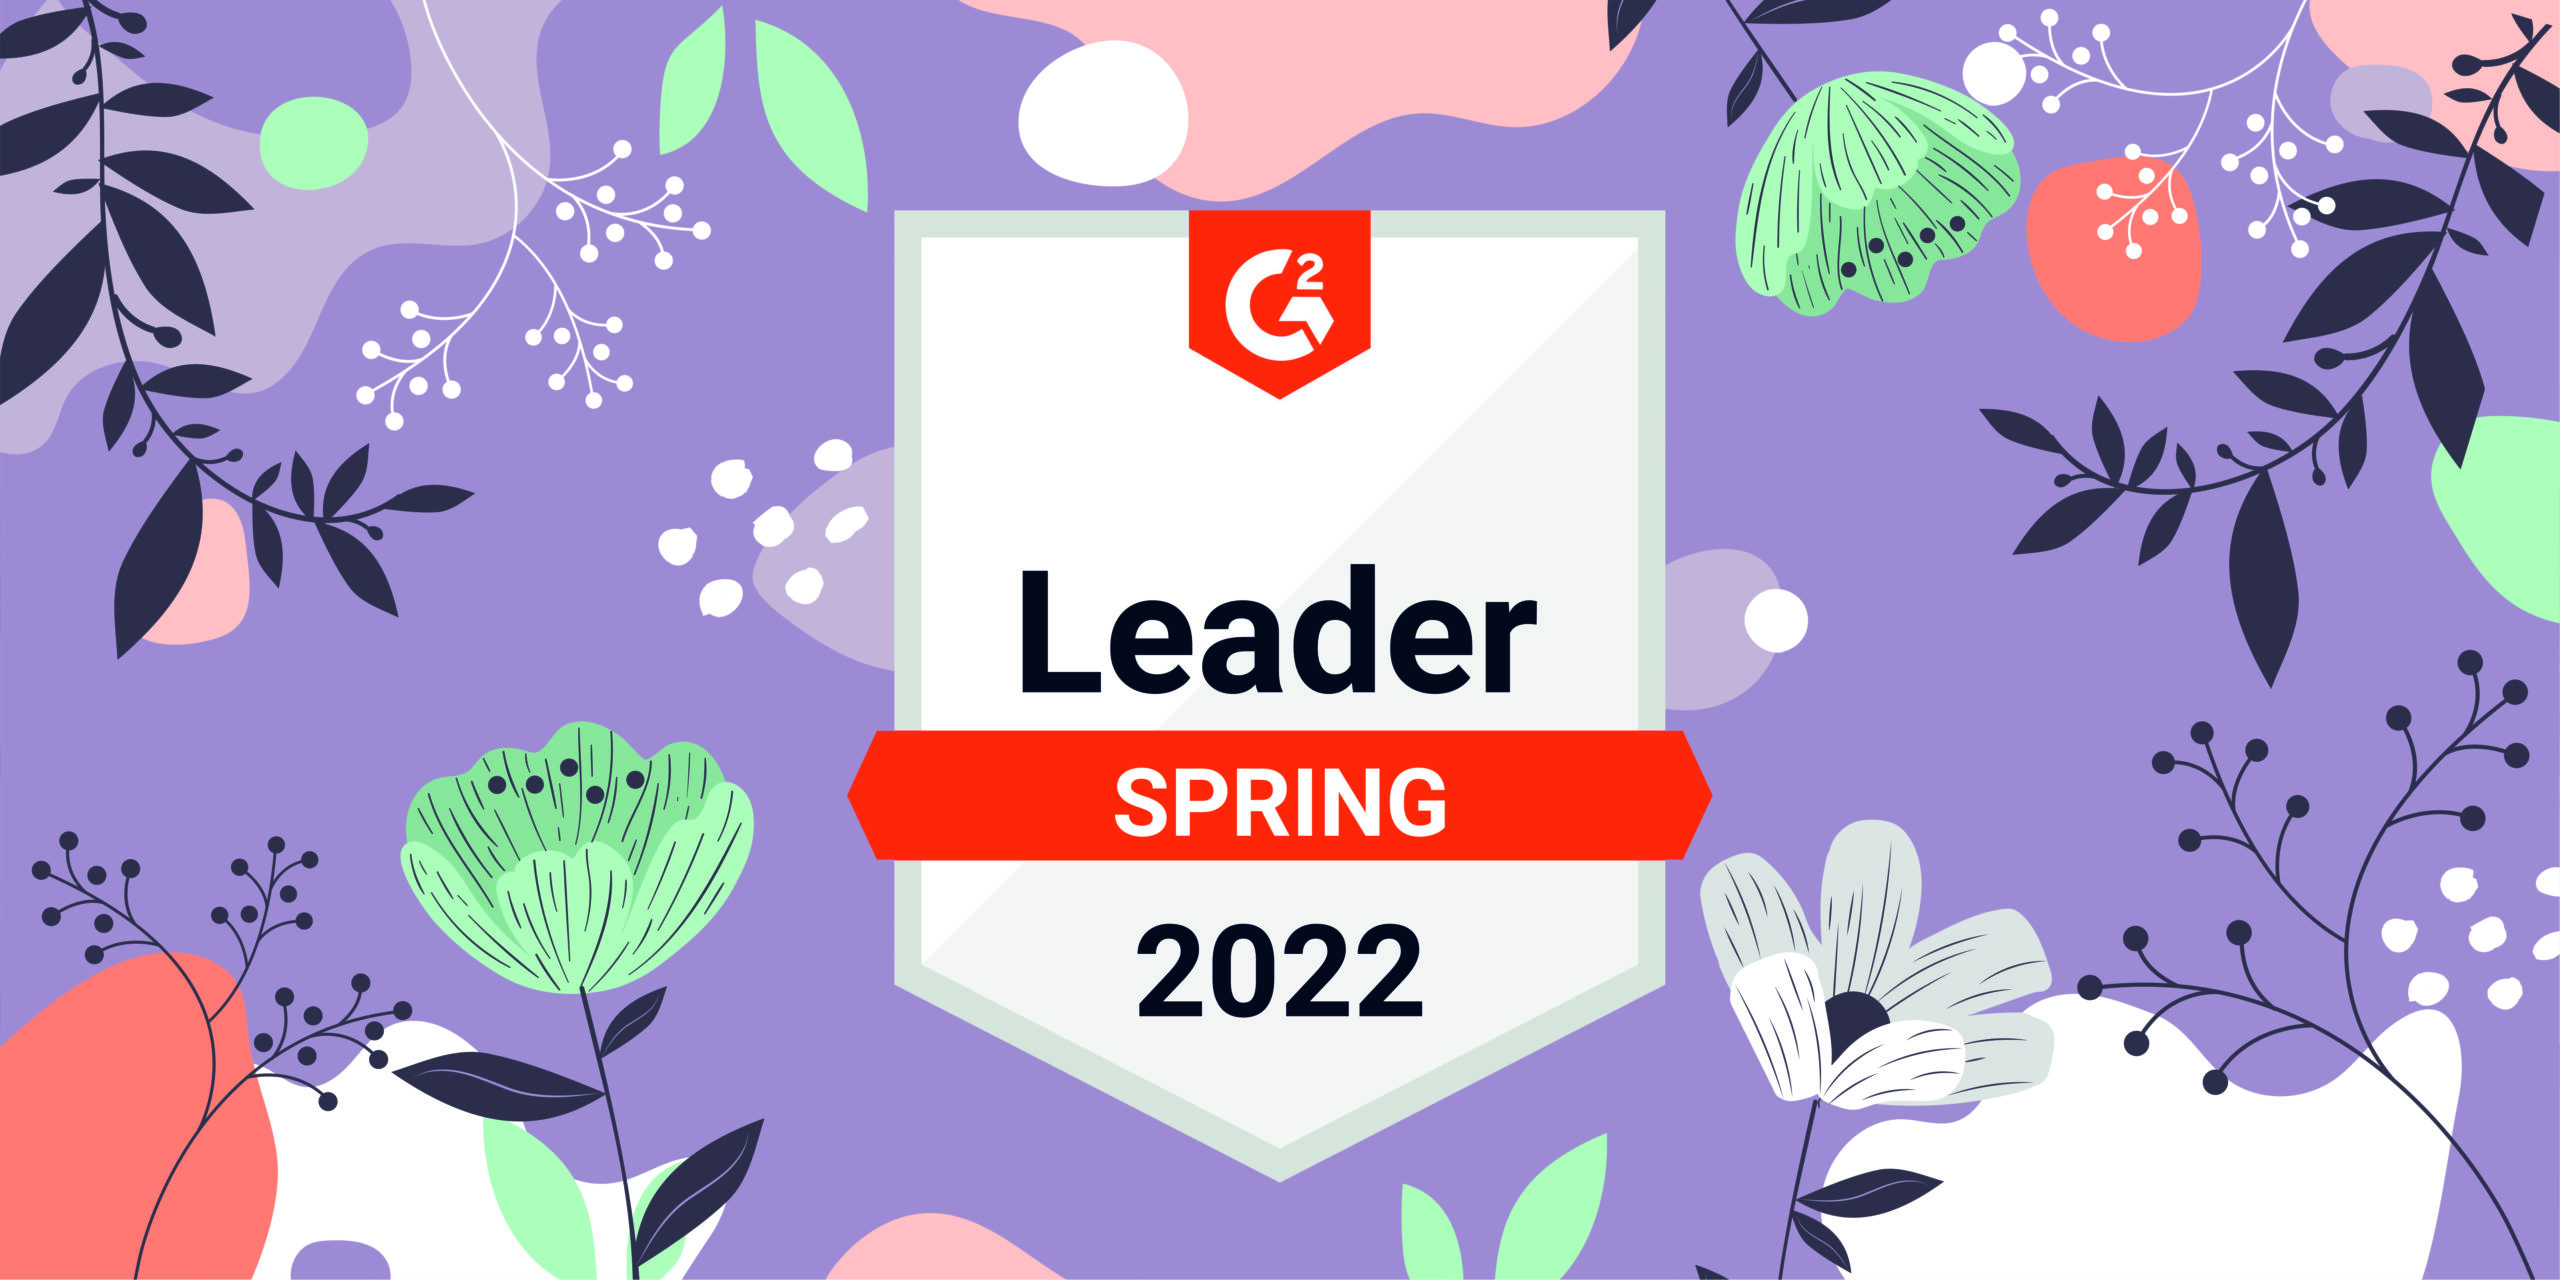 Snov.io Rocks Among G2 Spring 2022 Leaders